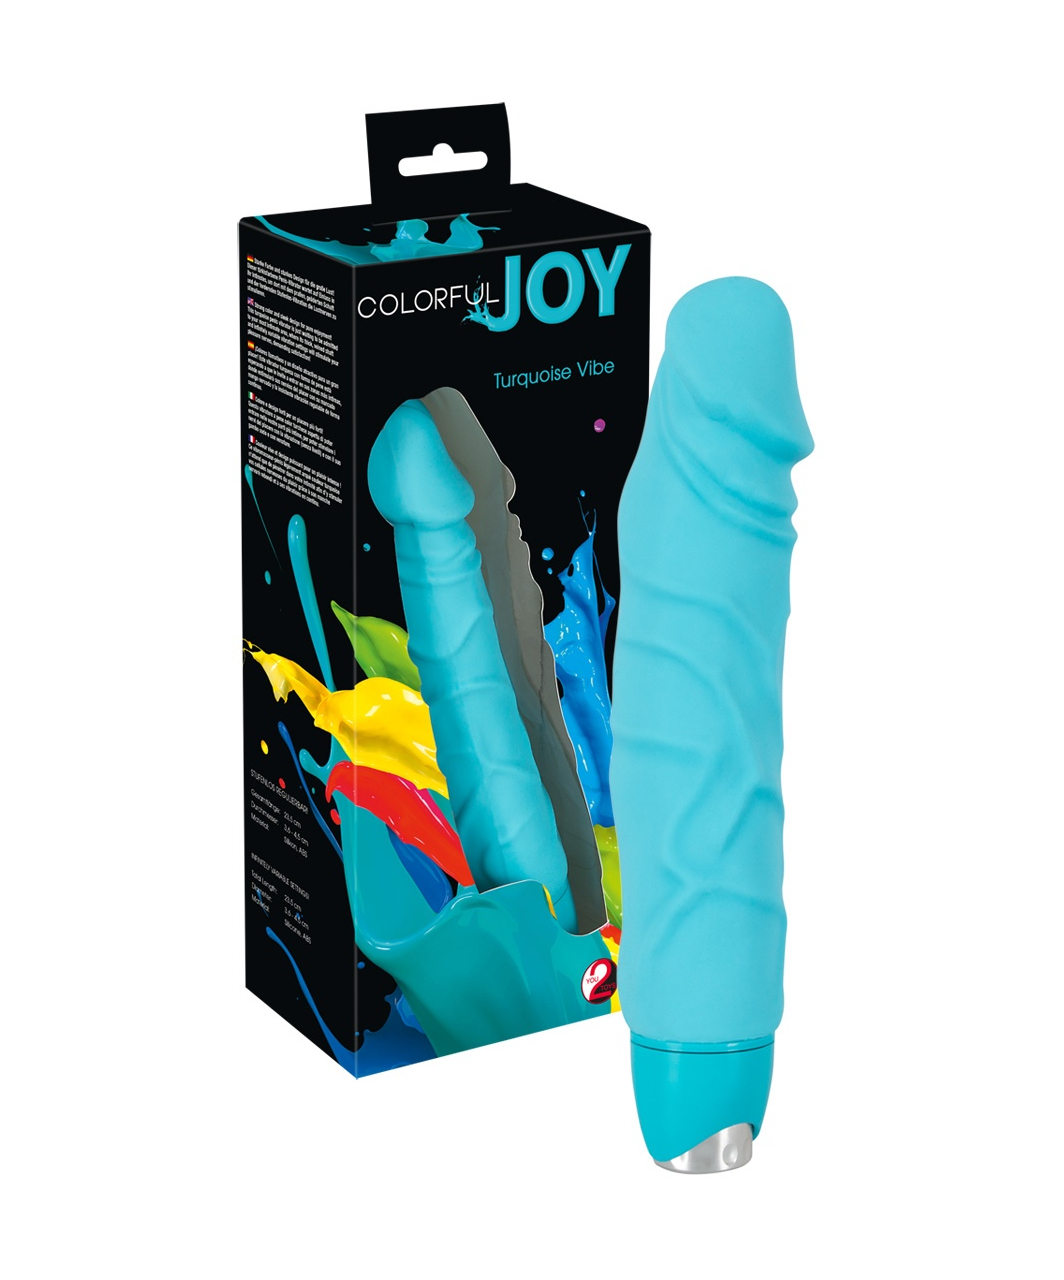 Colorful Joy Turquoise Vibe